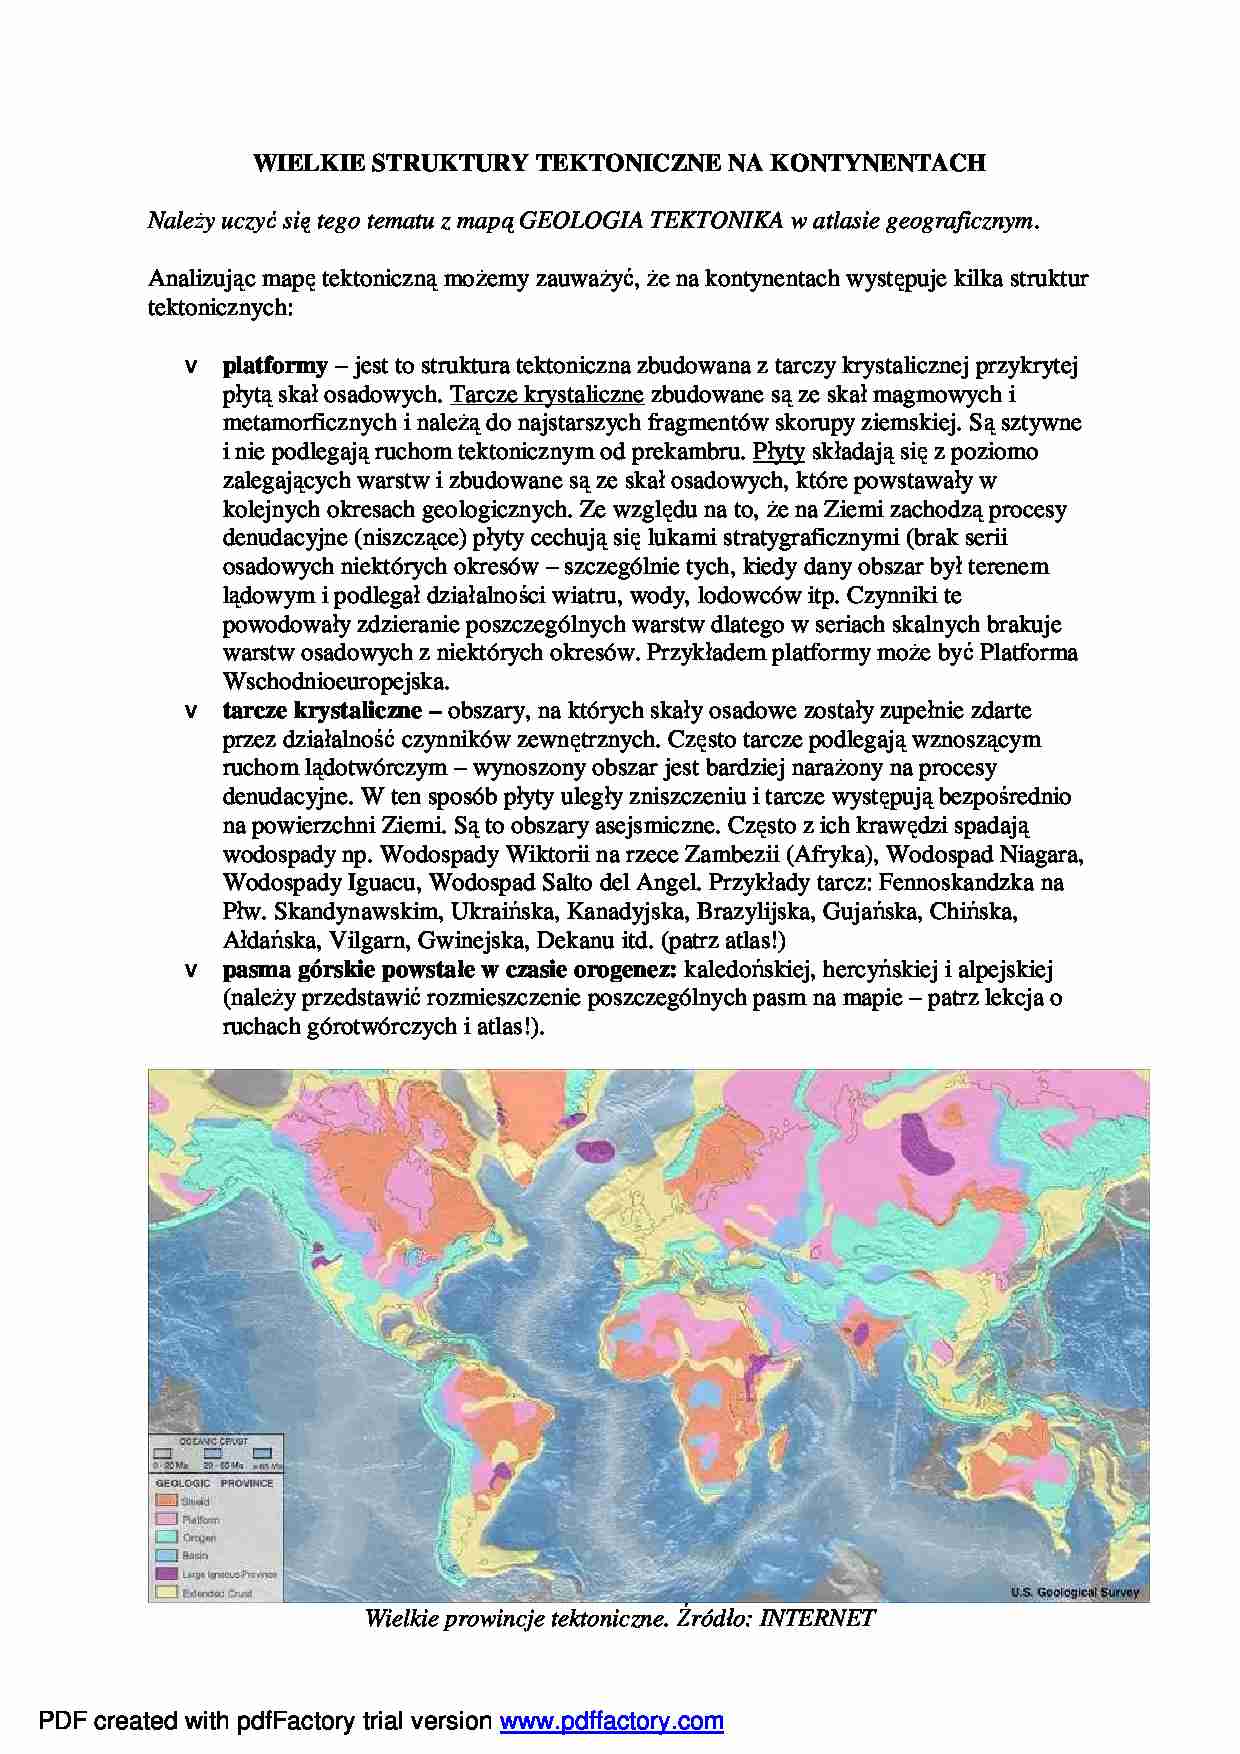 Wielkie struktury tektoniczne na kontynentach - wykład - strona 1